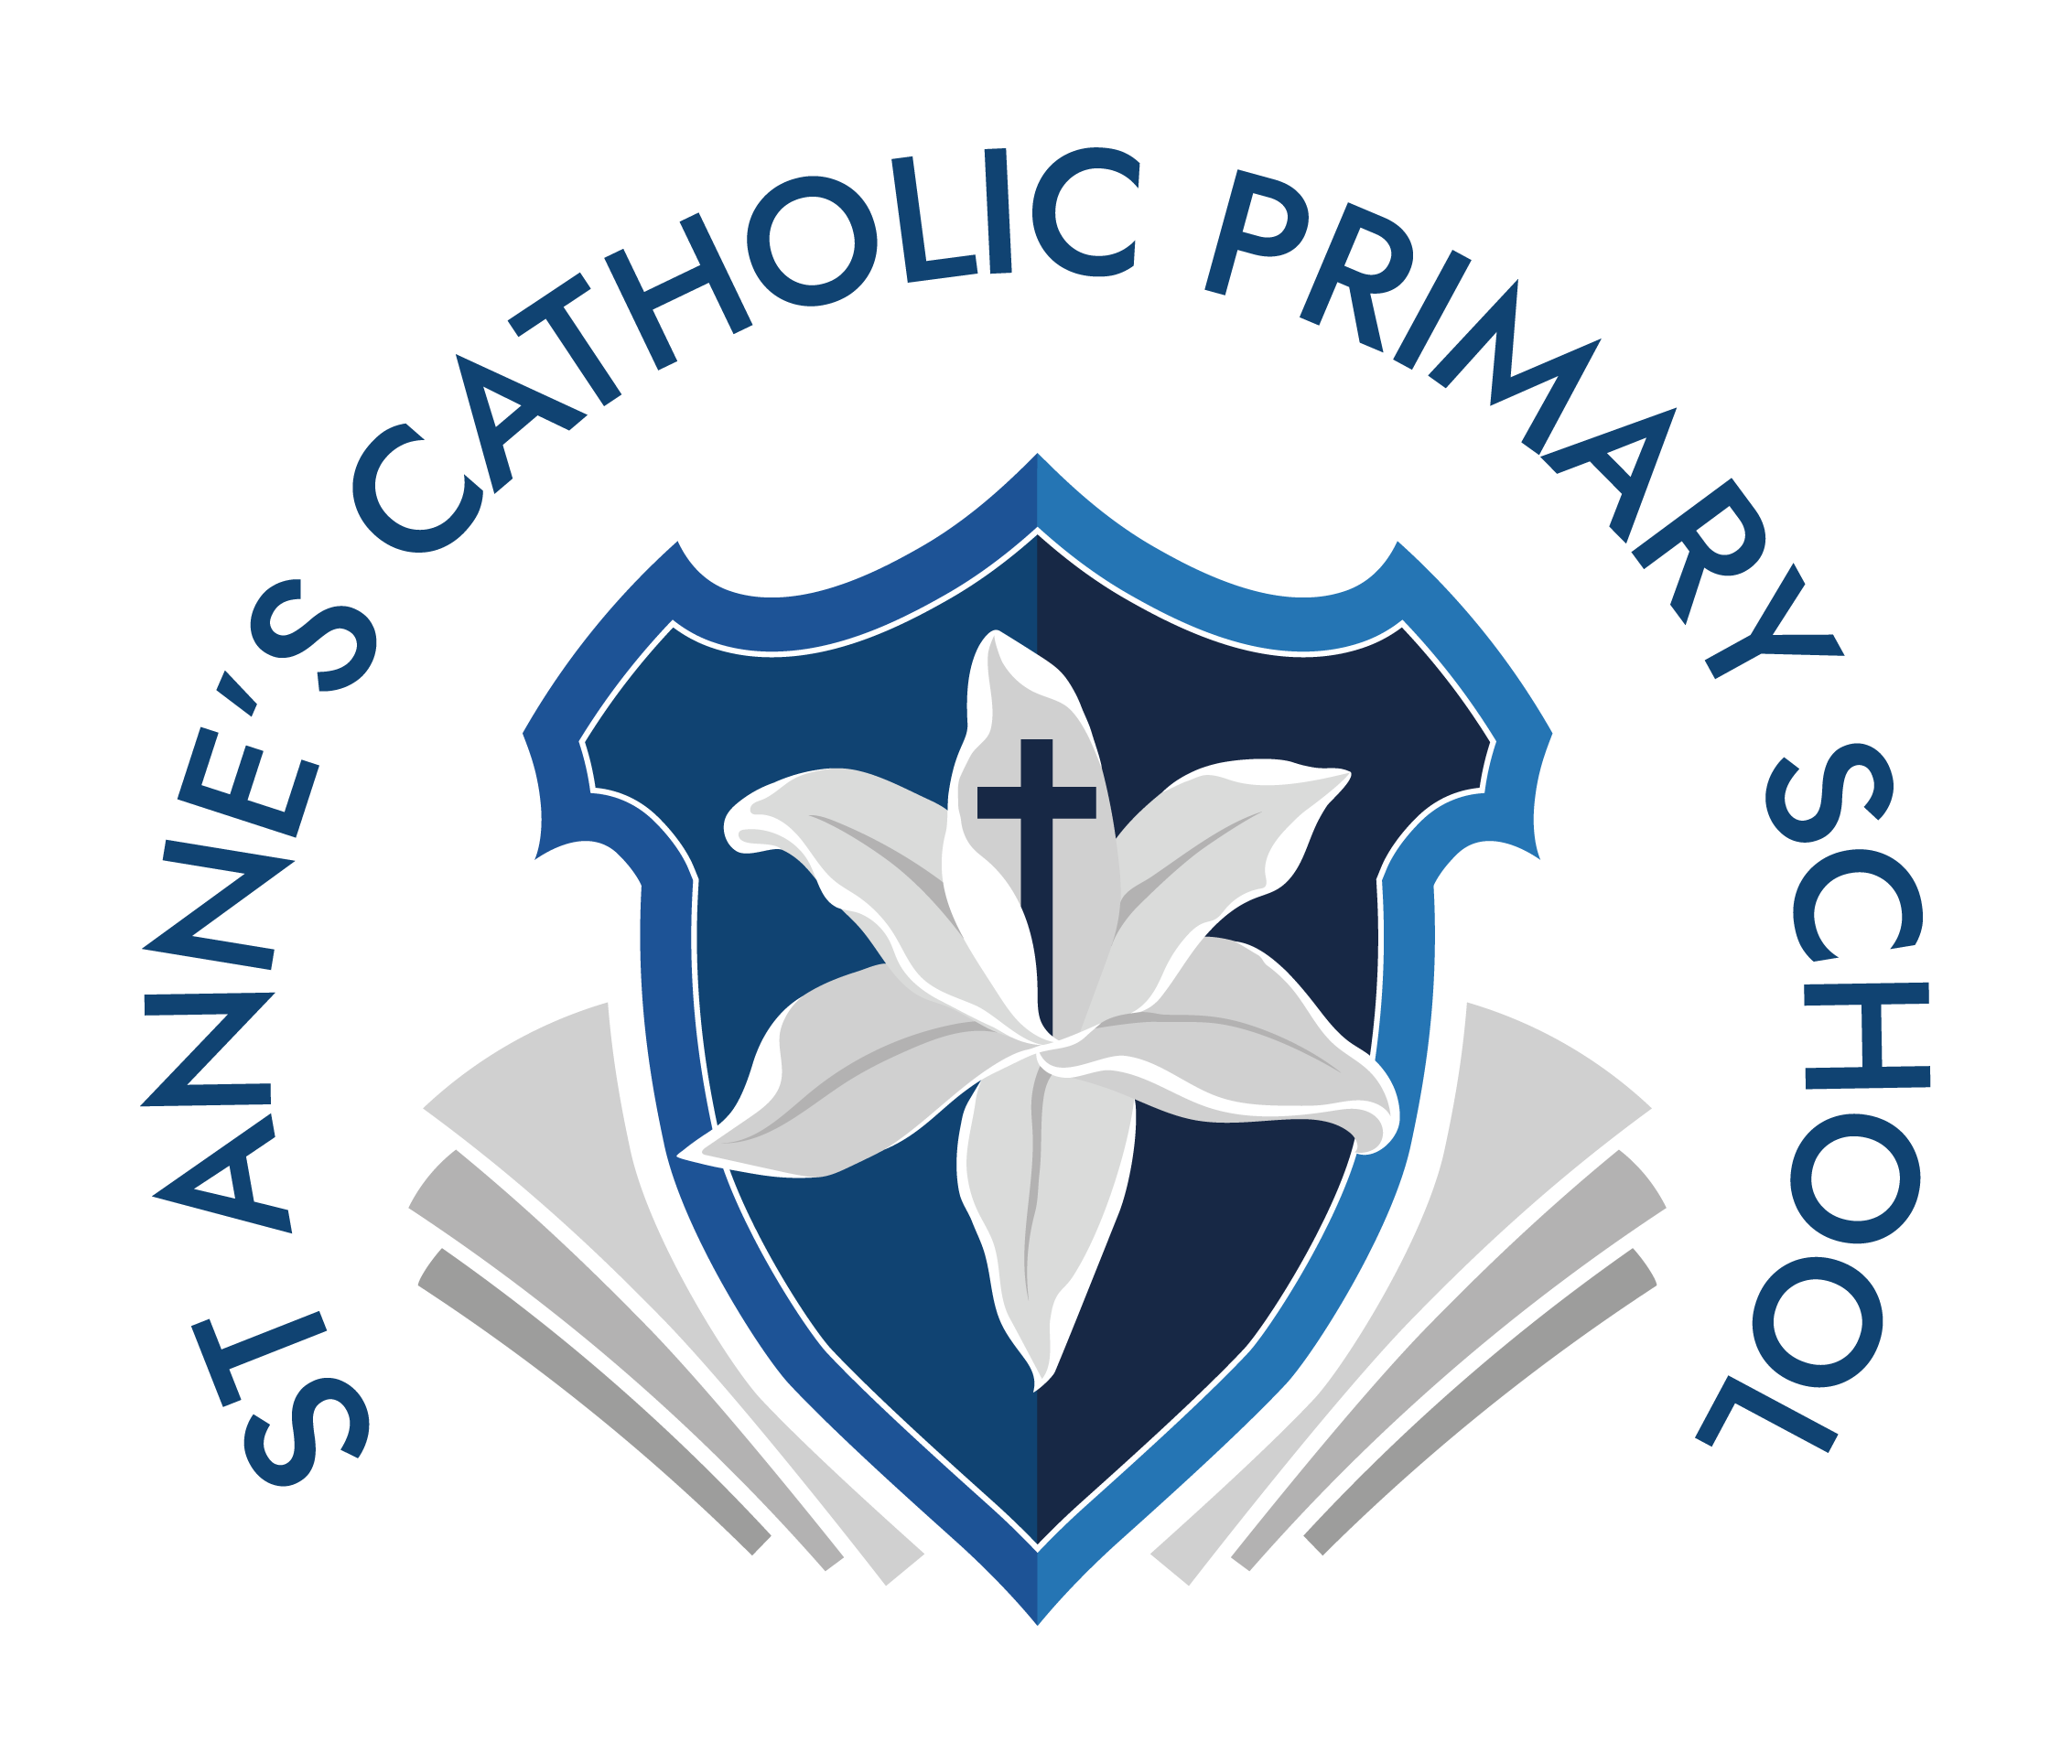 St Anne's Catholic Primary School